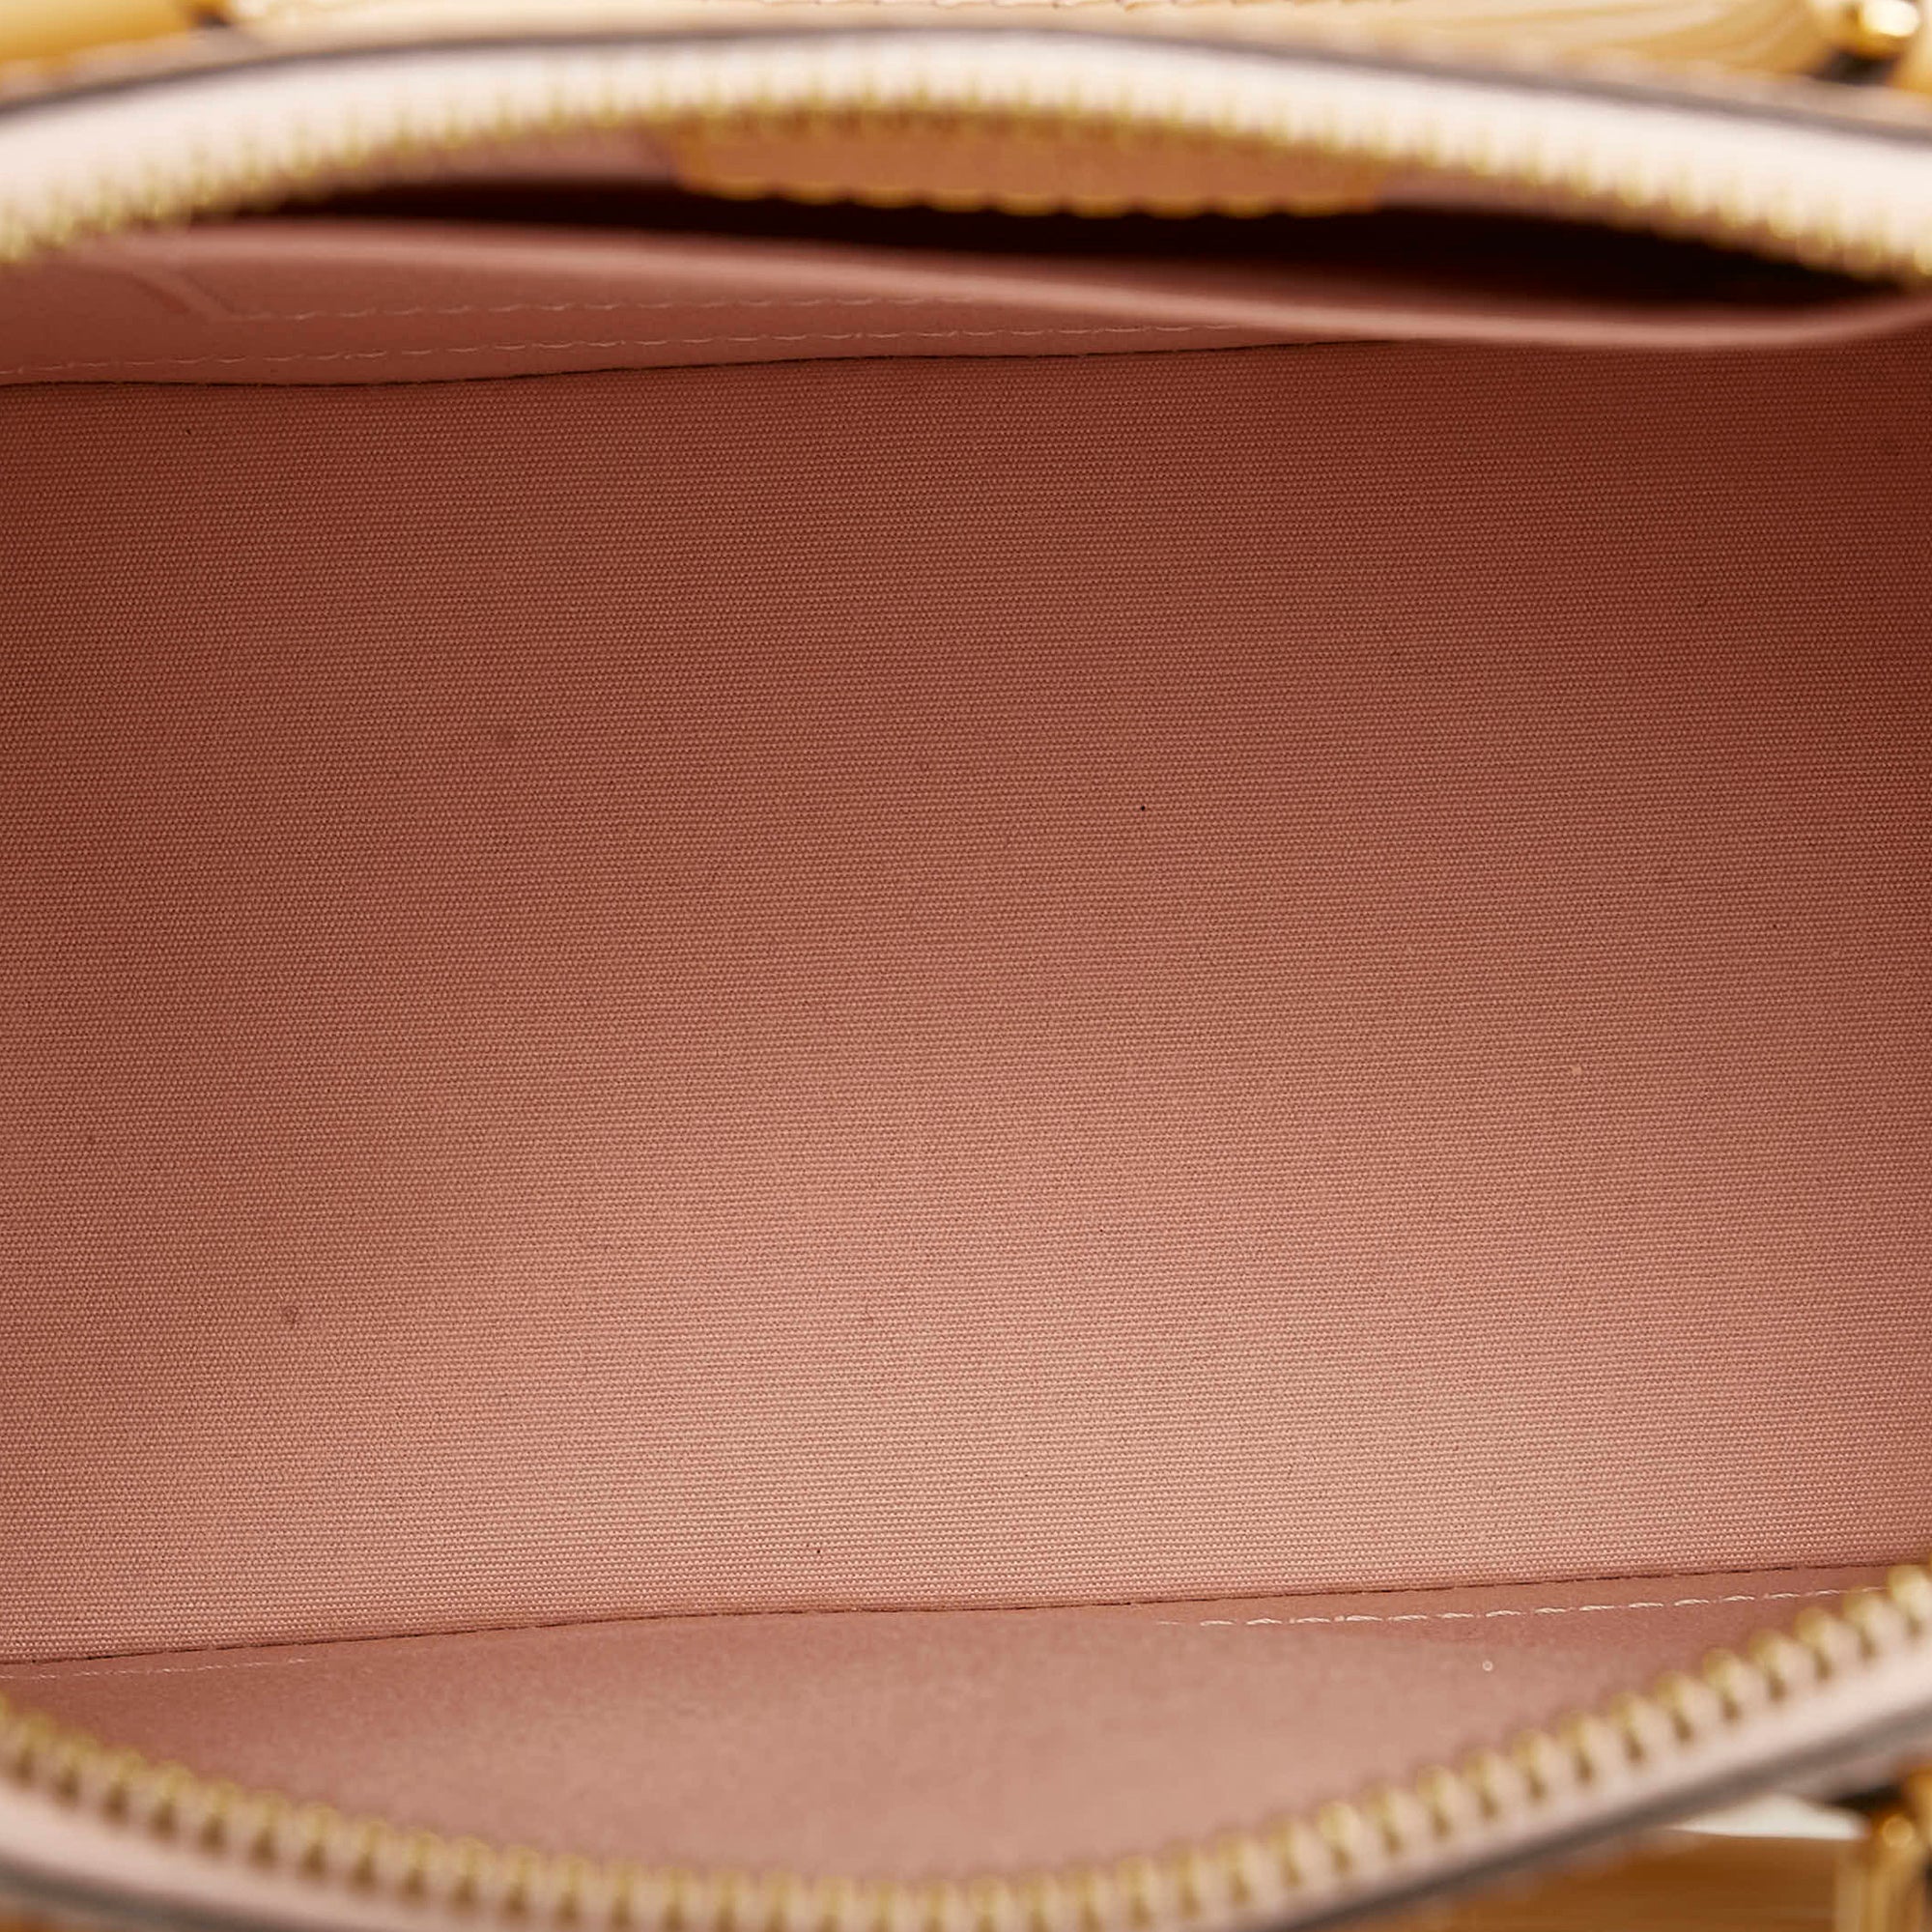 Louis Vuitton Alma Handbag 396021